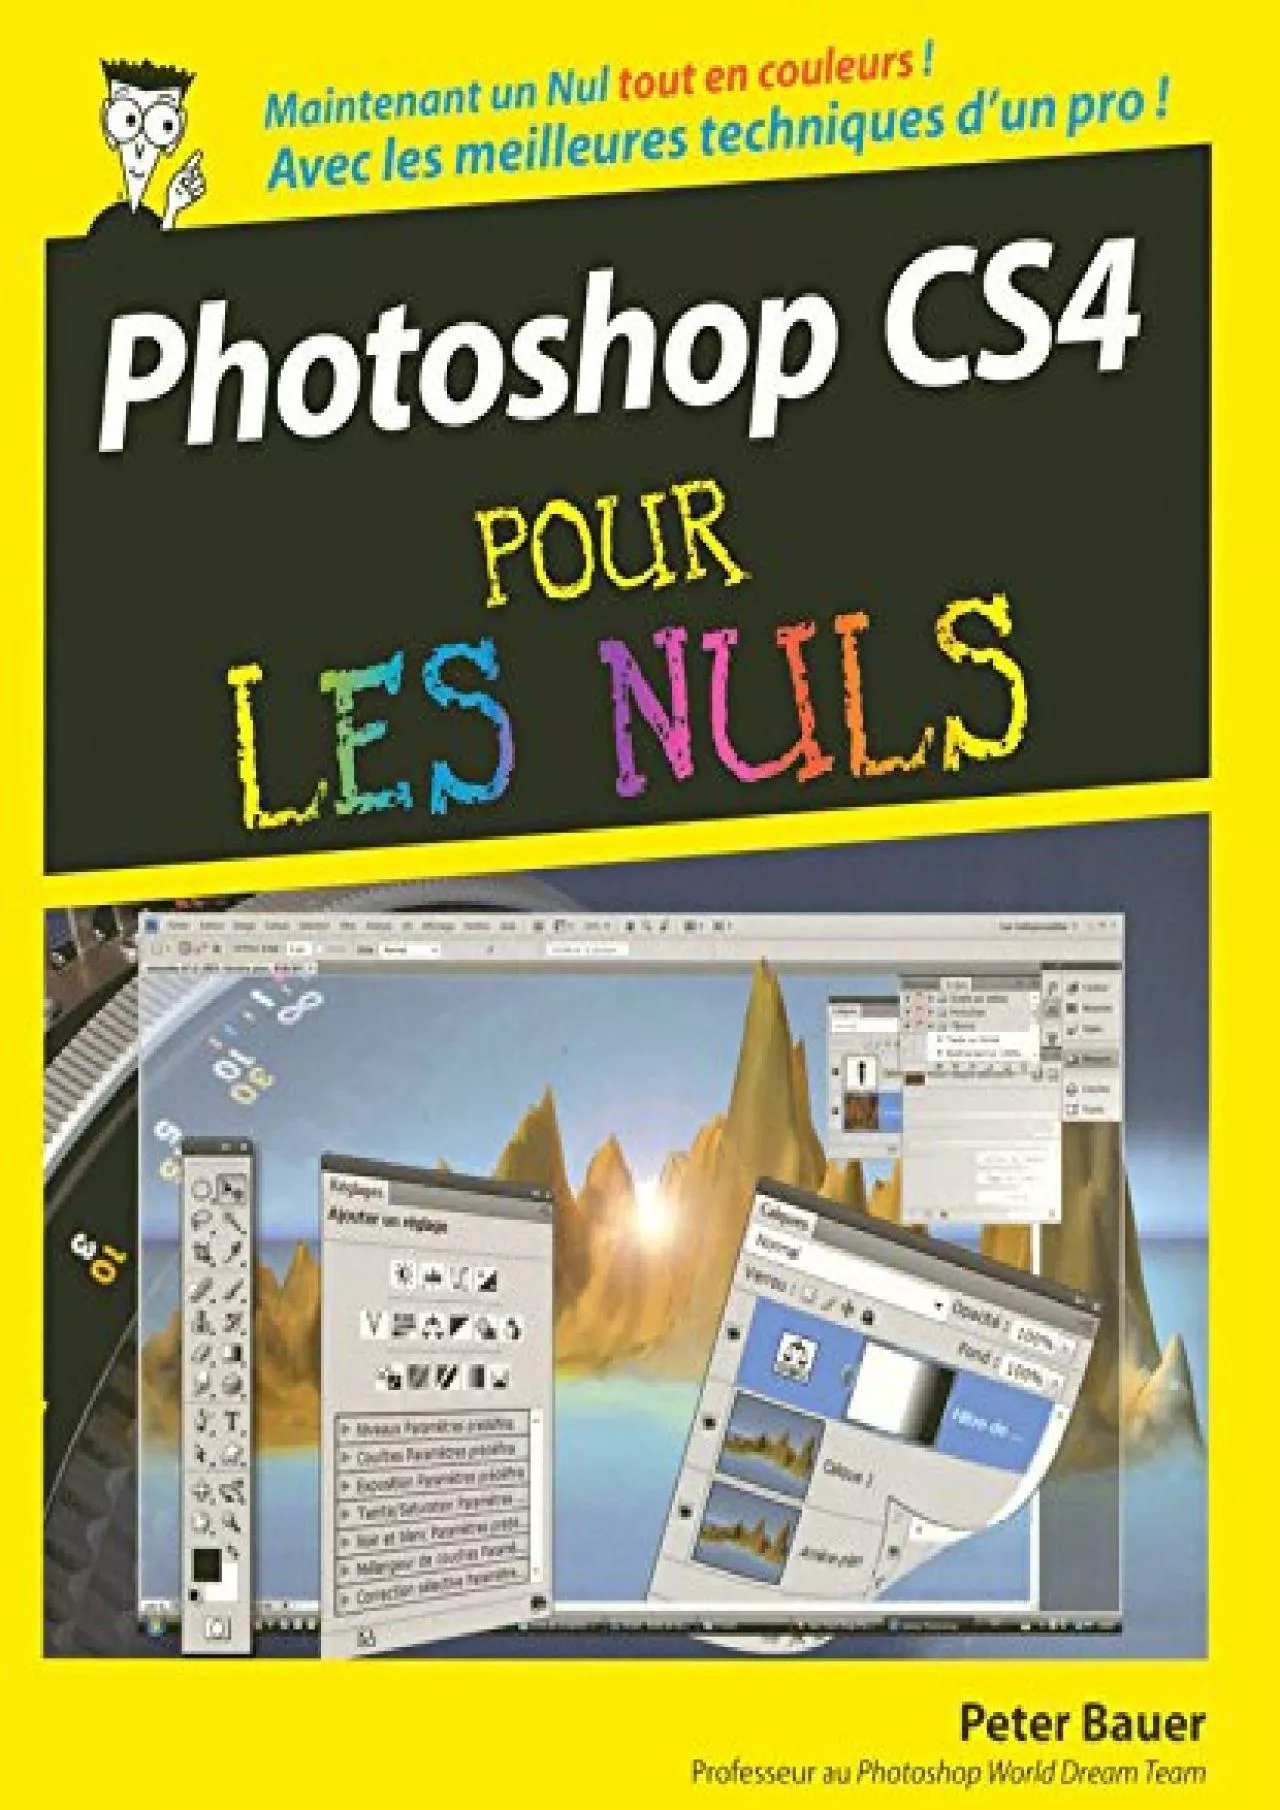 (DOWNLOAD)-Photoshop CS4 Pour les nuls Ed couleurs (Informatique pour les nuls) (French